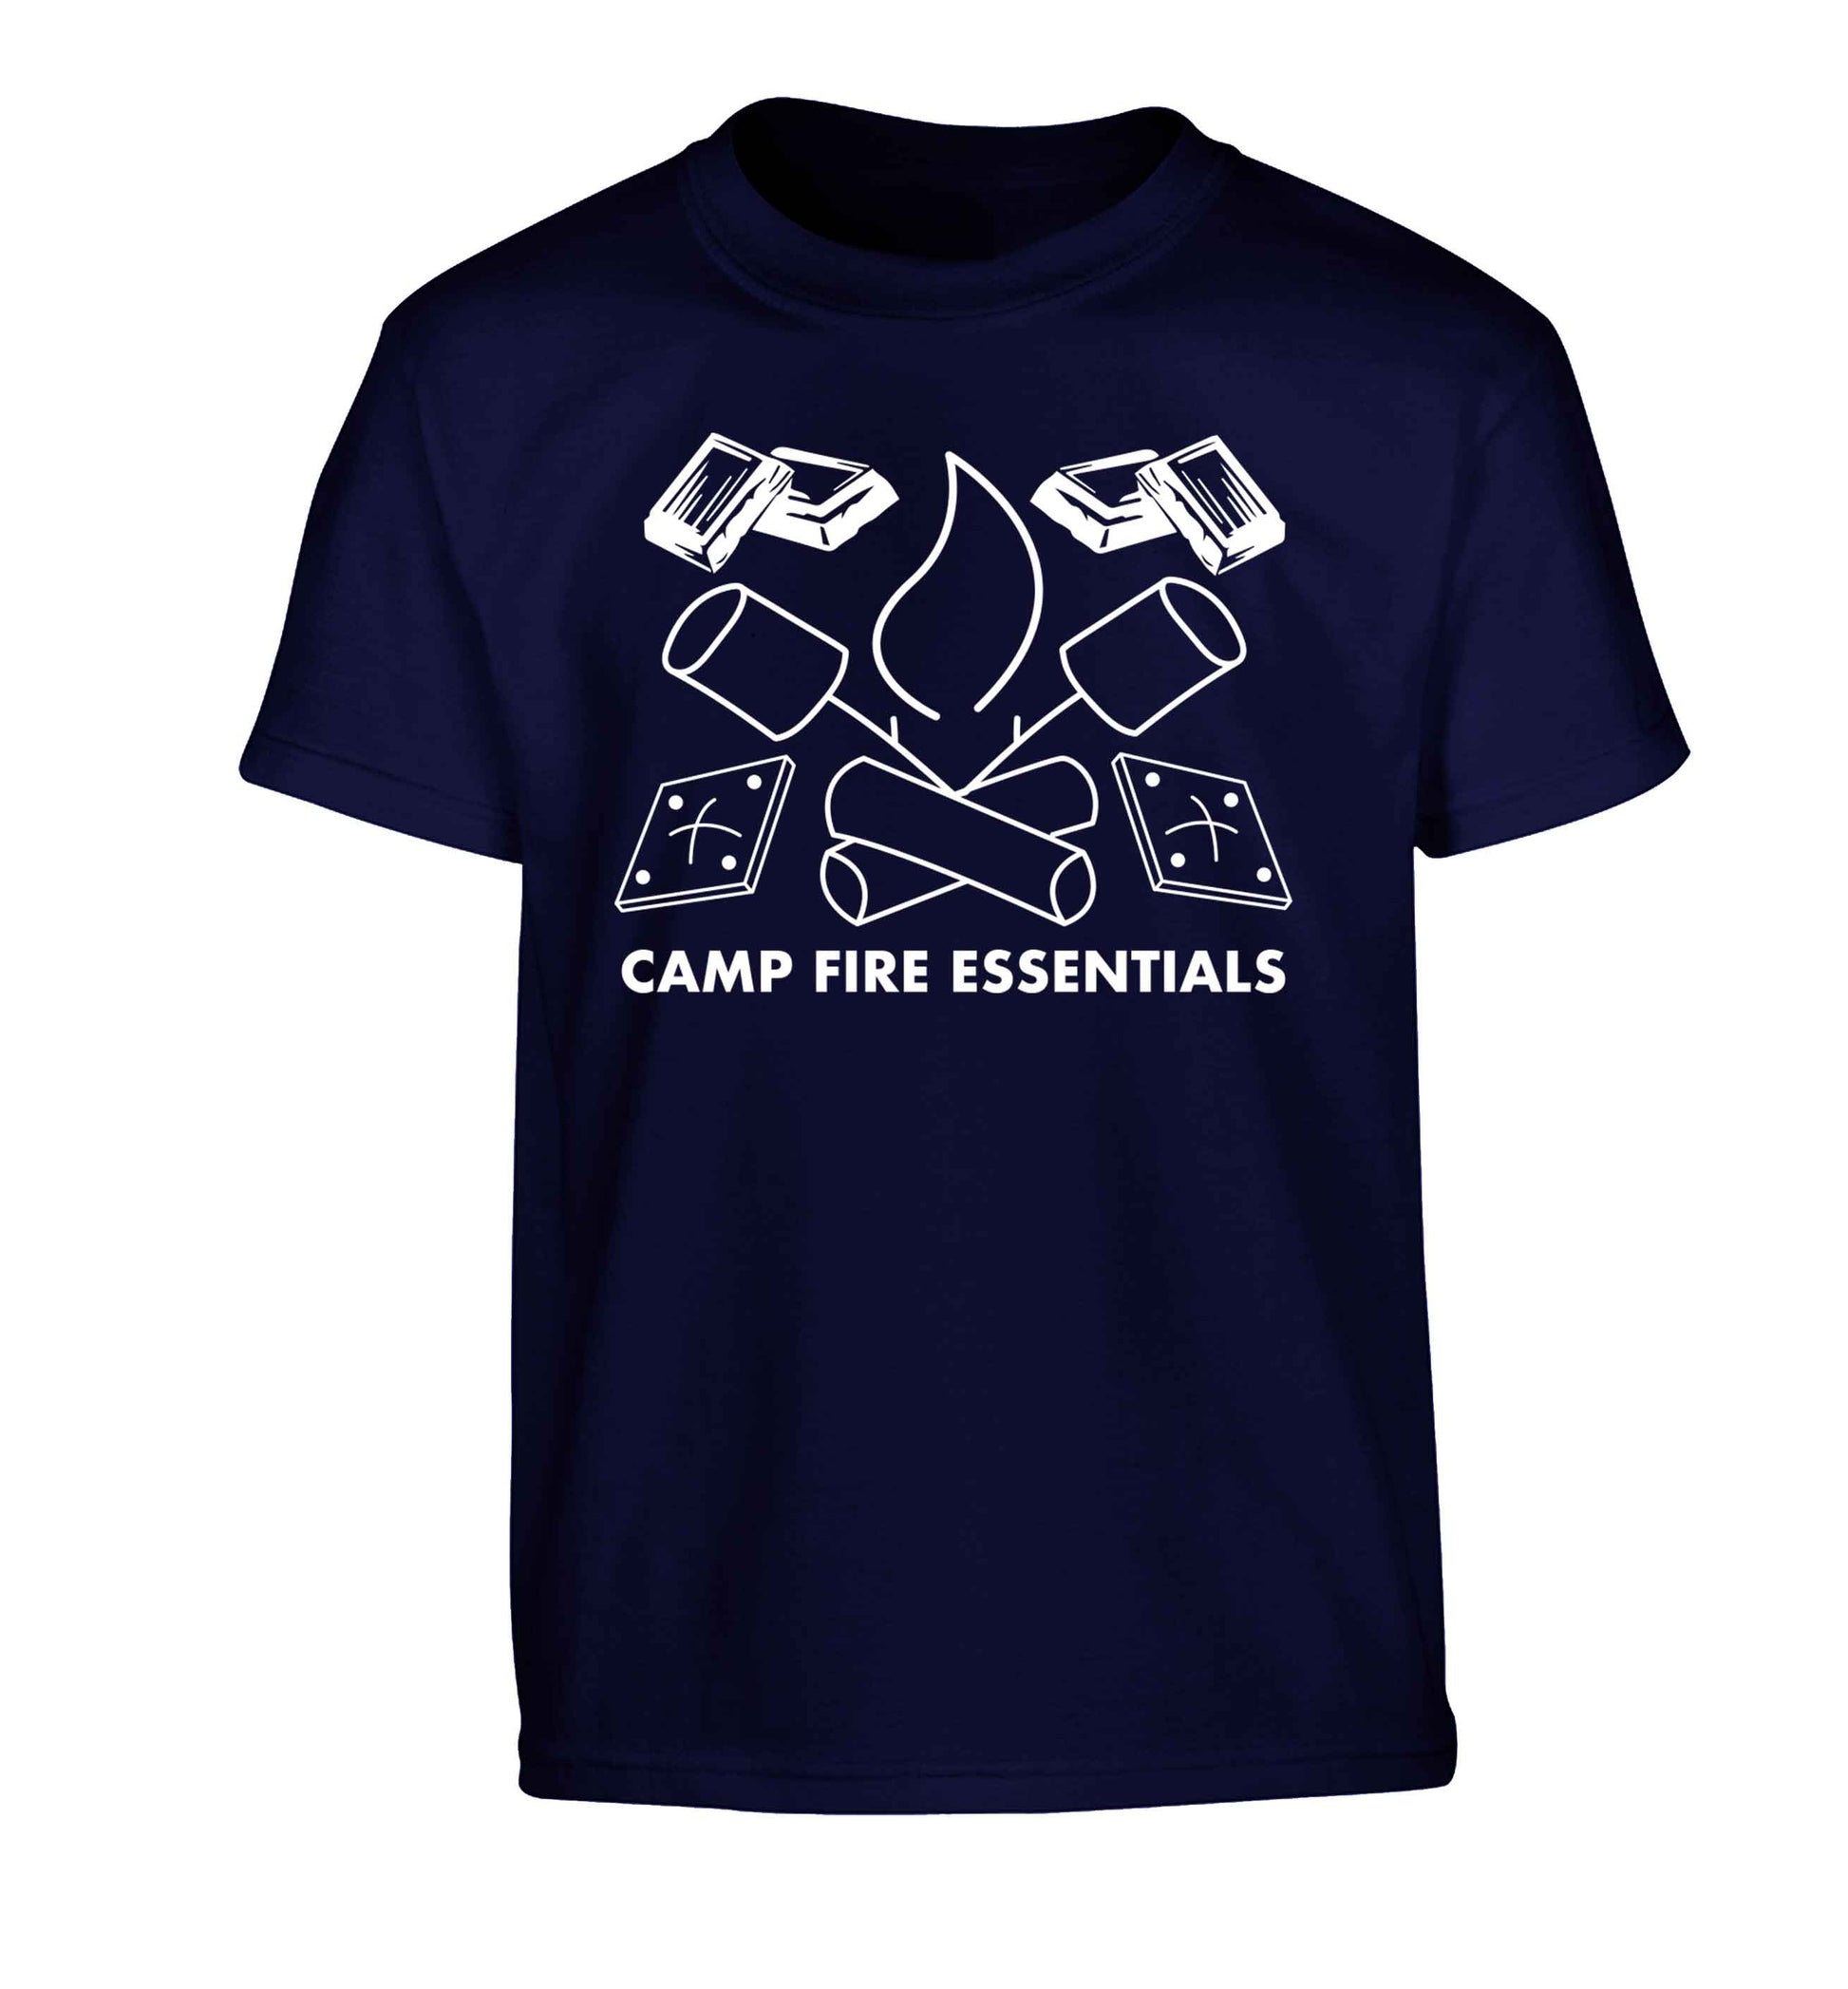 Campfire essentials Children's navy Tshirt 12-13 Years